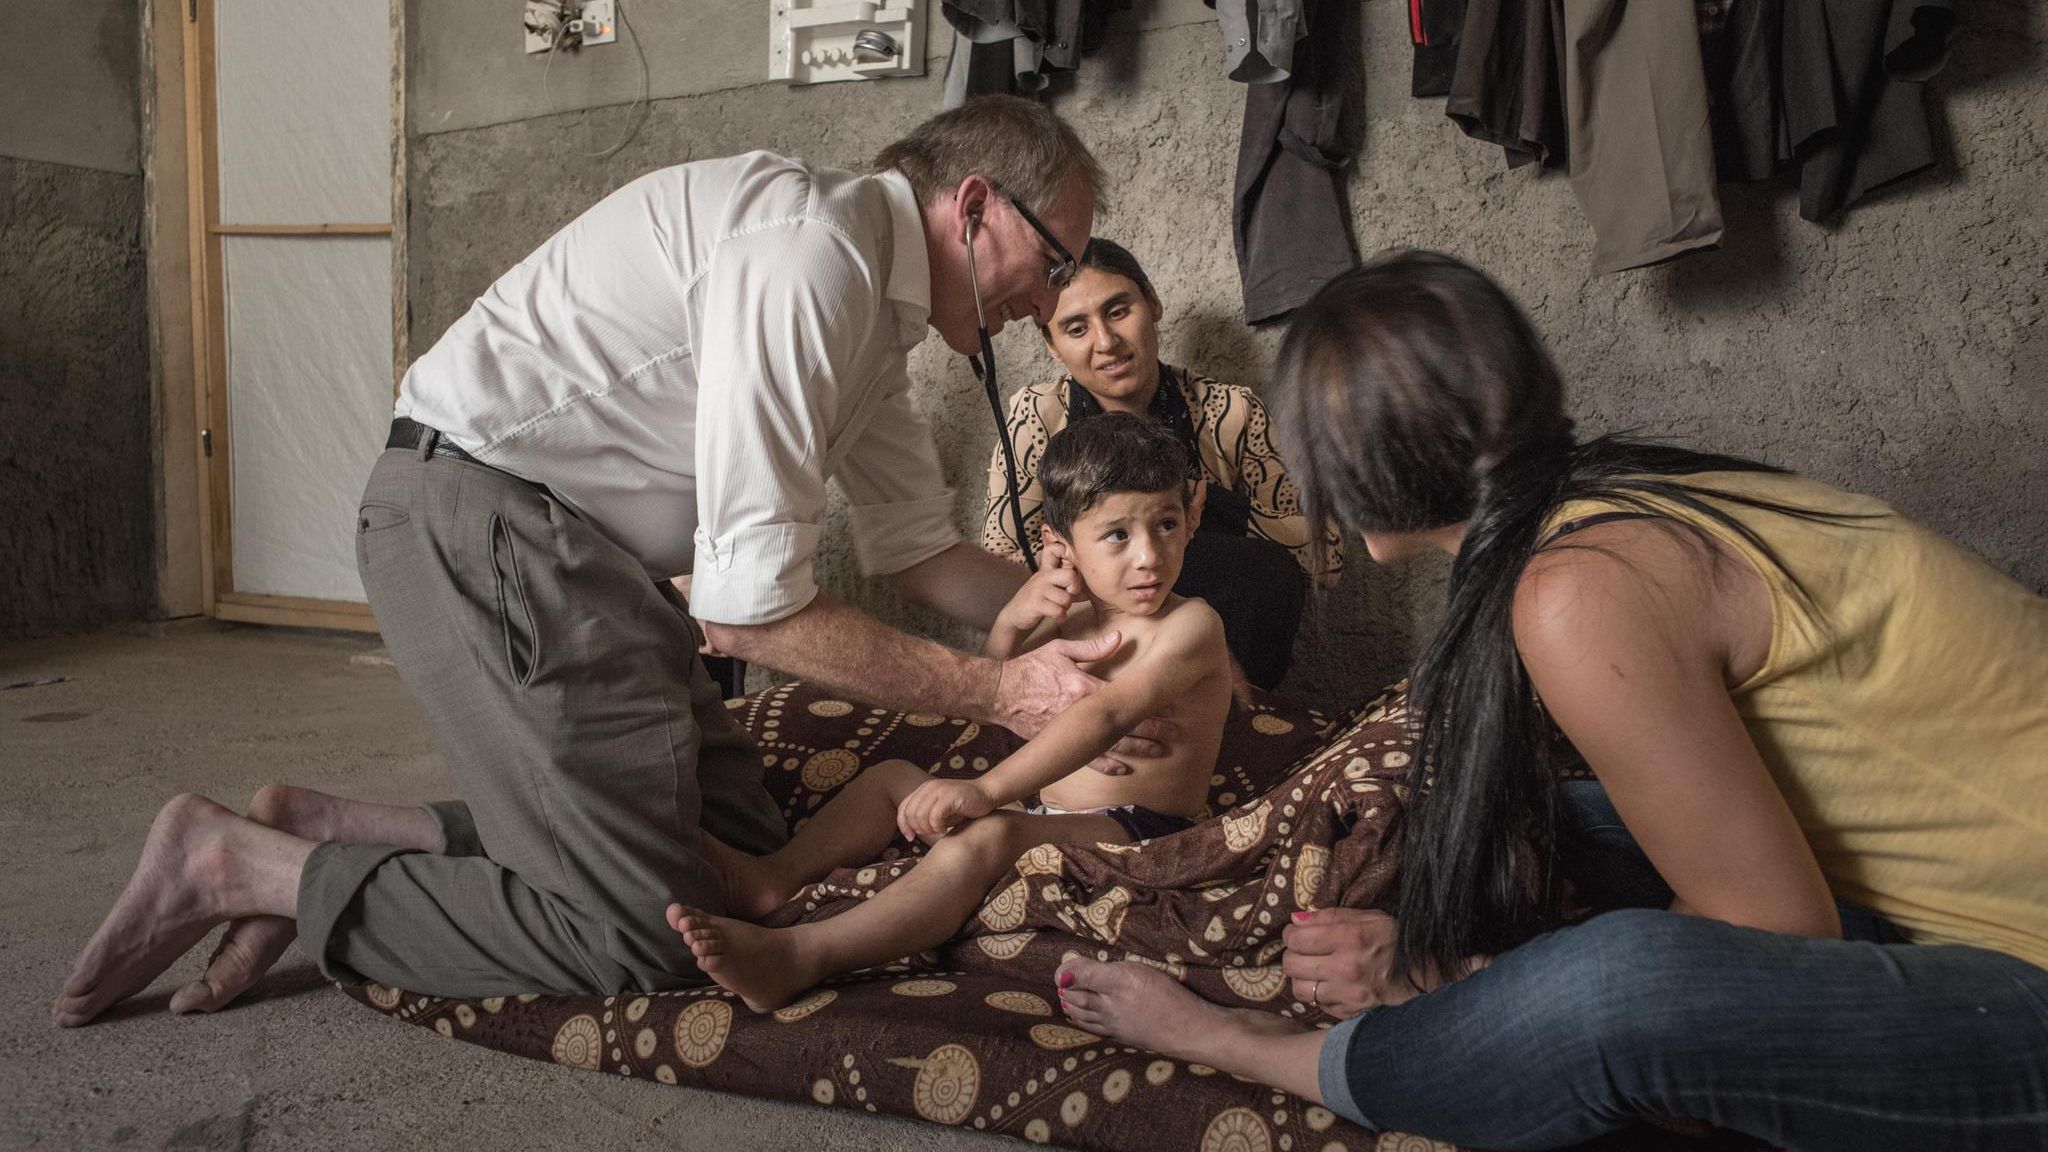 Doktor Gammel holt ein Kind: Wie ein deutscher Arzt einen gefolterten aus  dem Irak rettet